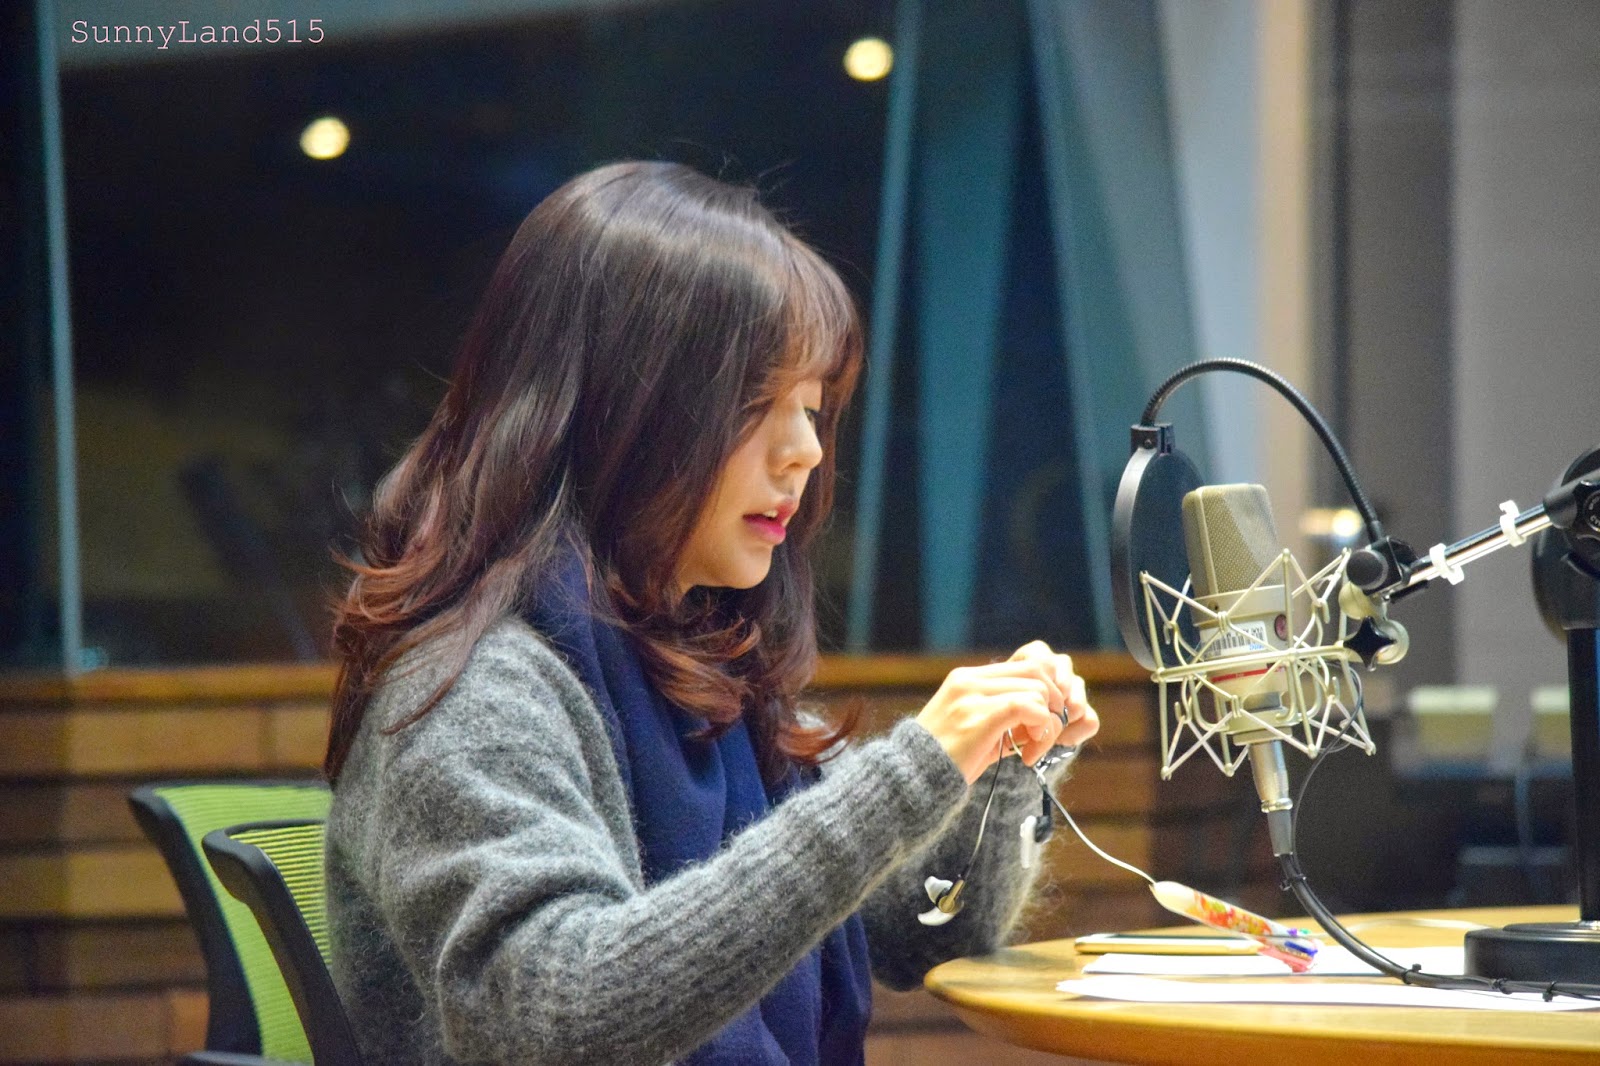 [OTHER][06-02-2015]Hình ảnh mới nhất từ DJ Sunny tại Radio MBC FM4U - "FM Date" - Page 10 DSC_0230_Fotor